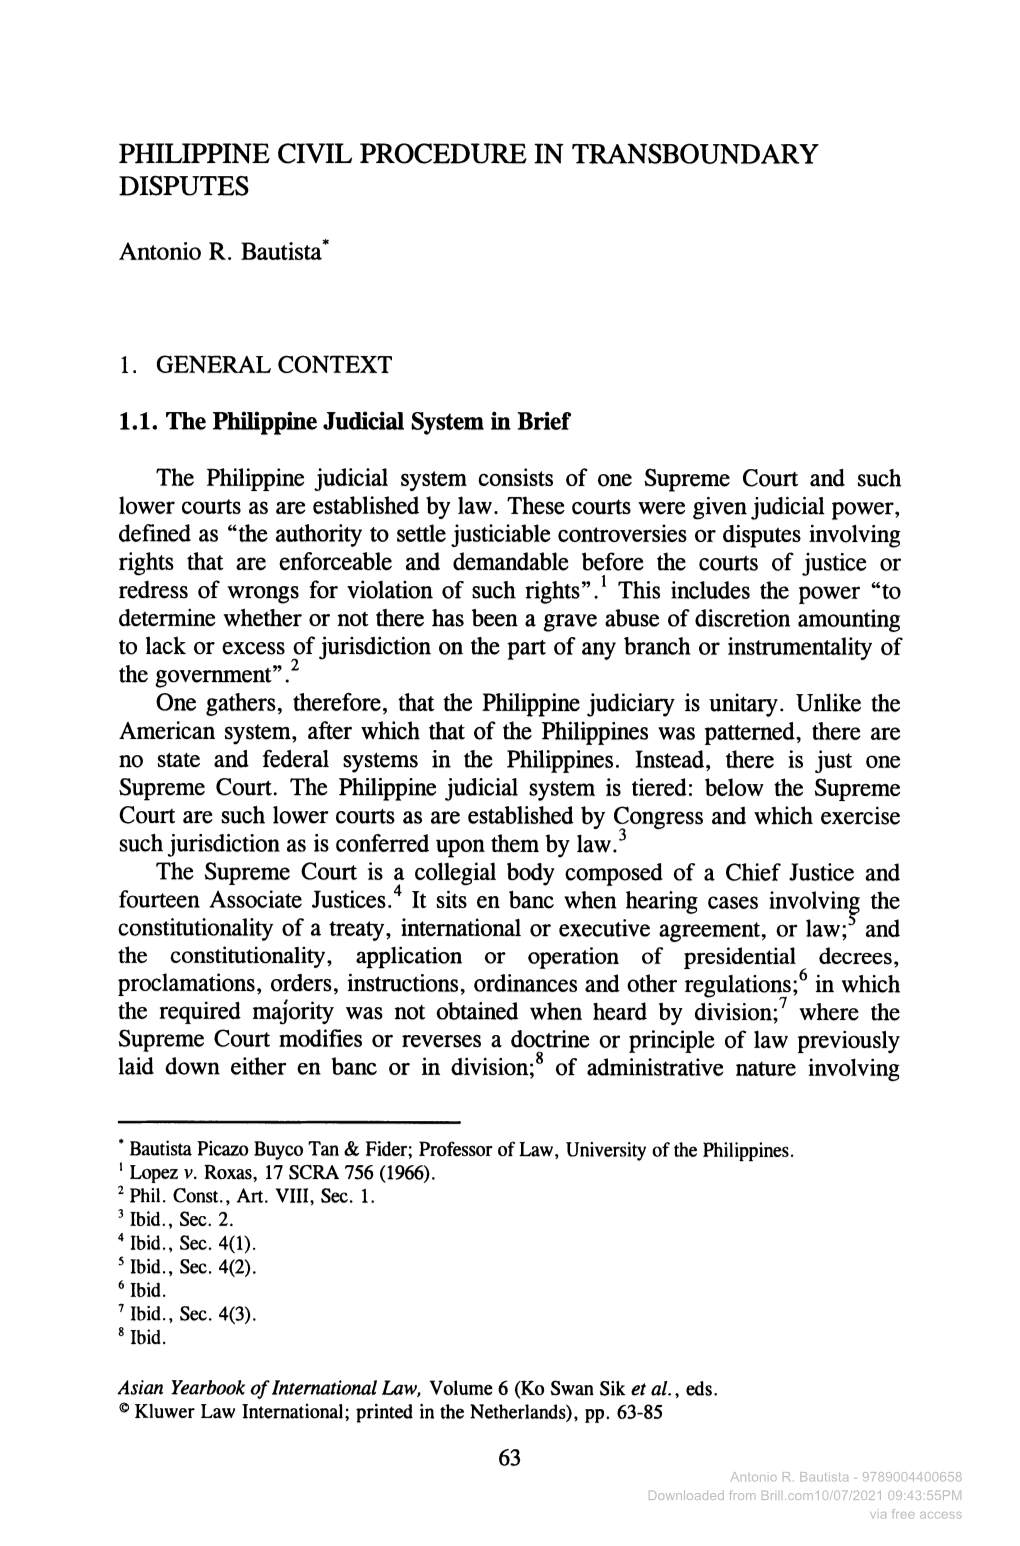 Philippine Civil Procedure in Transboundary Disputes